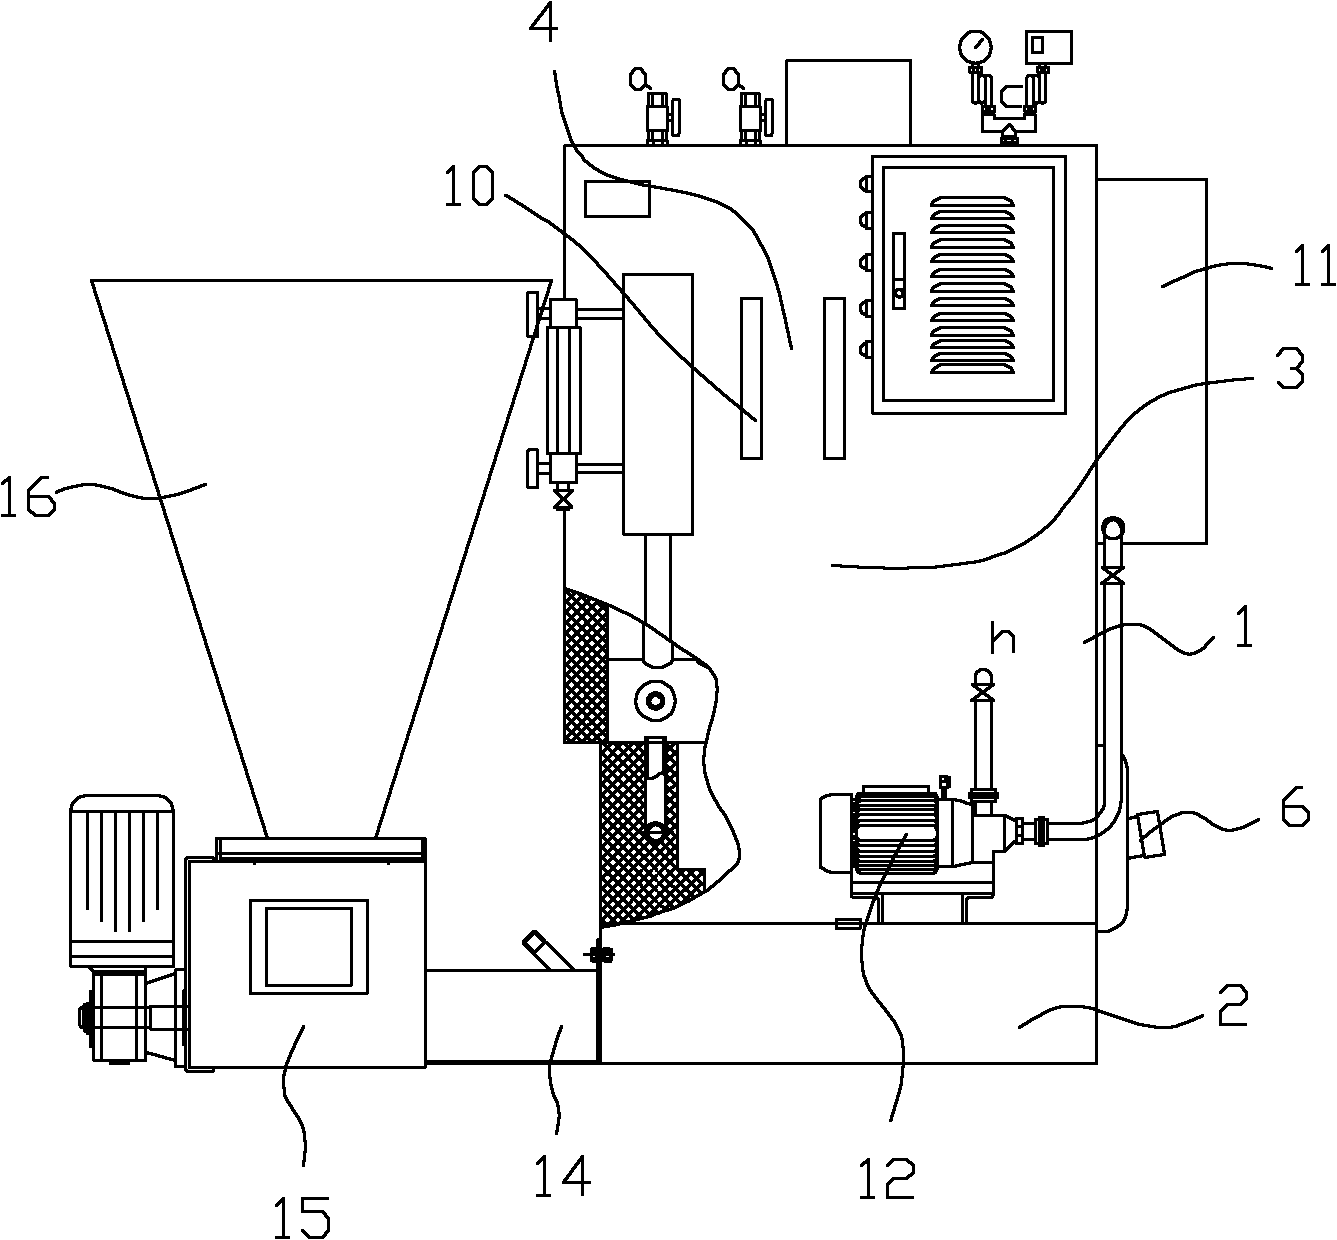 蒸汽发生器原理(蒸汽发生器原理图)